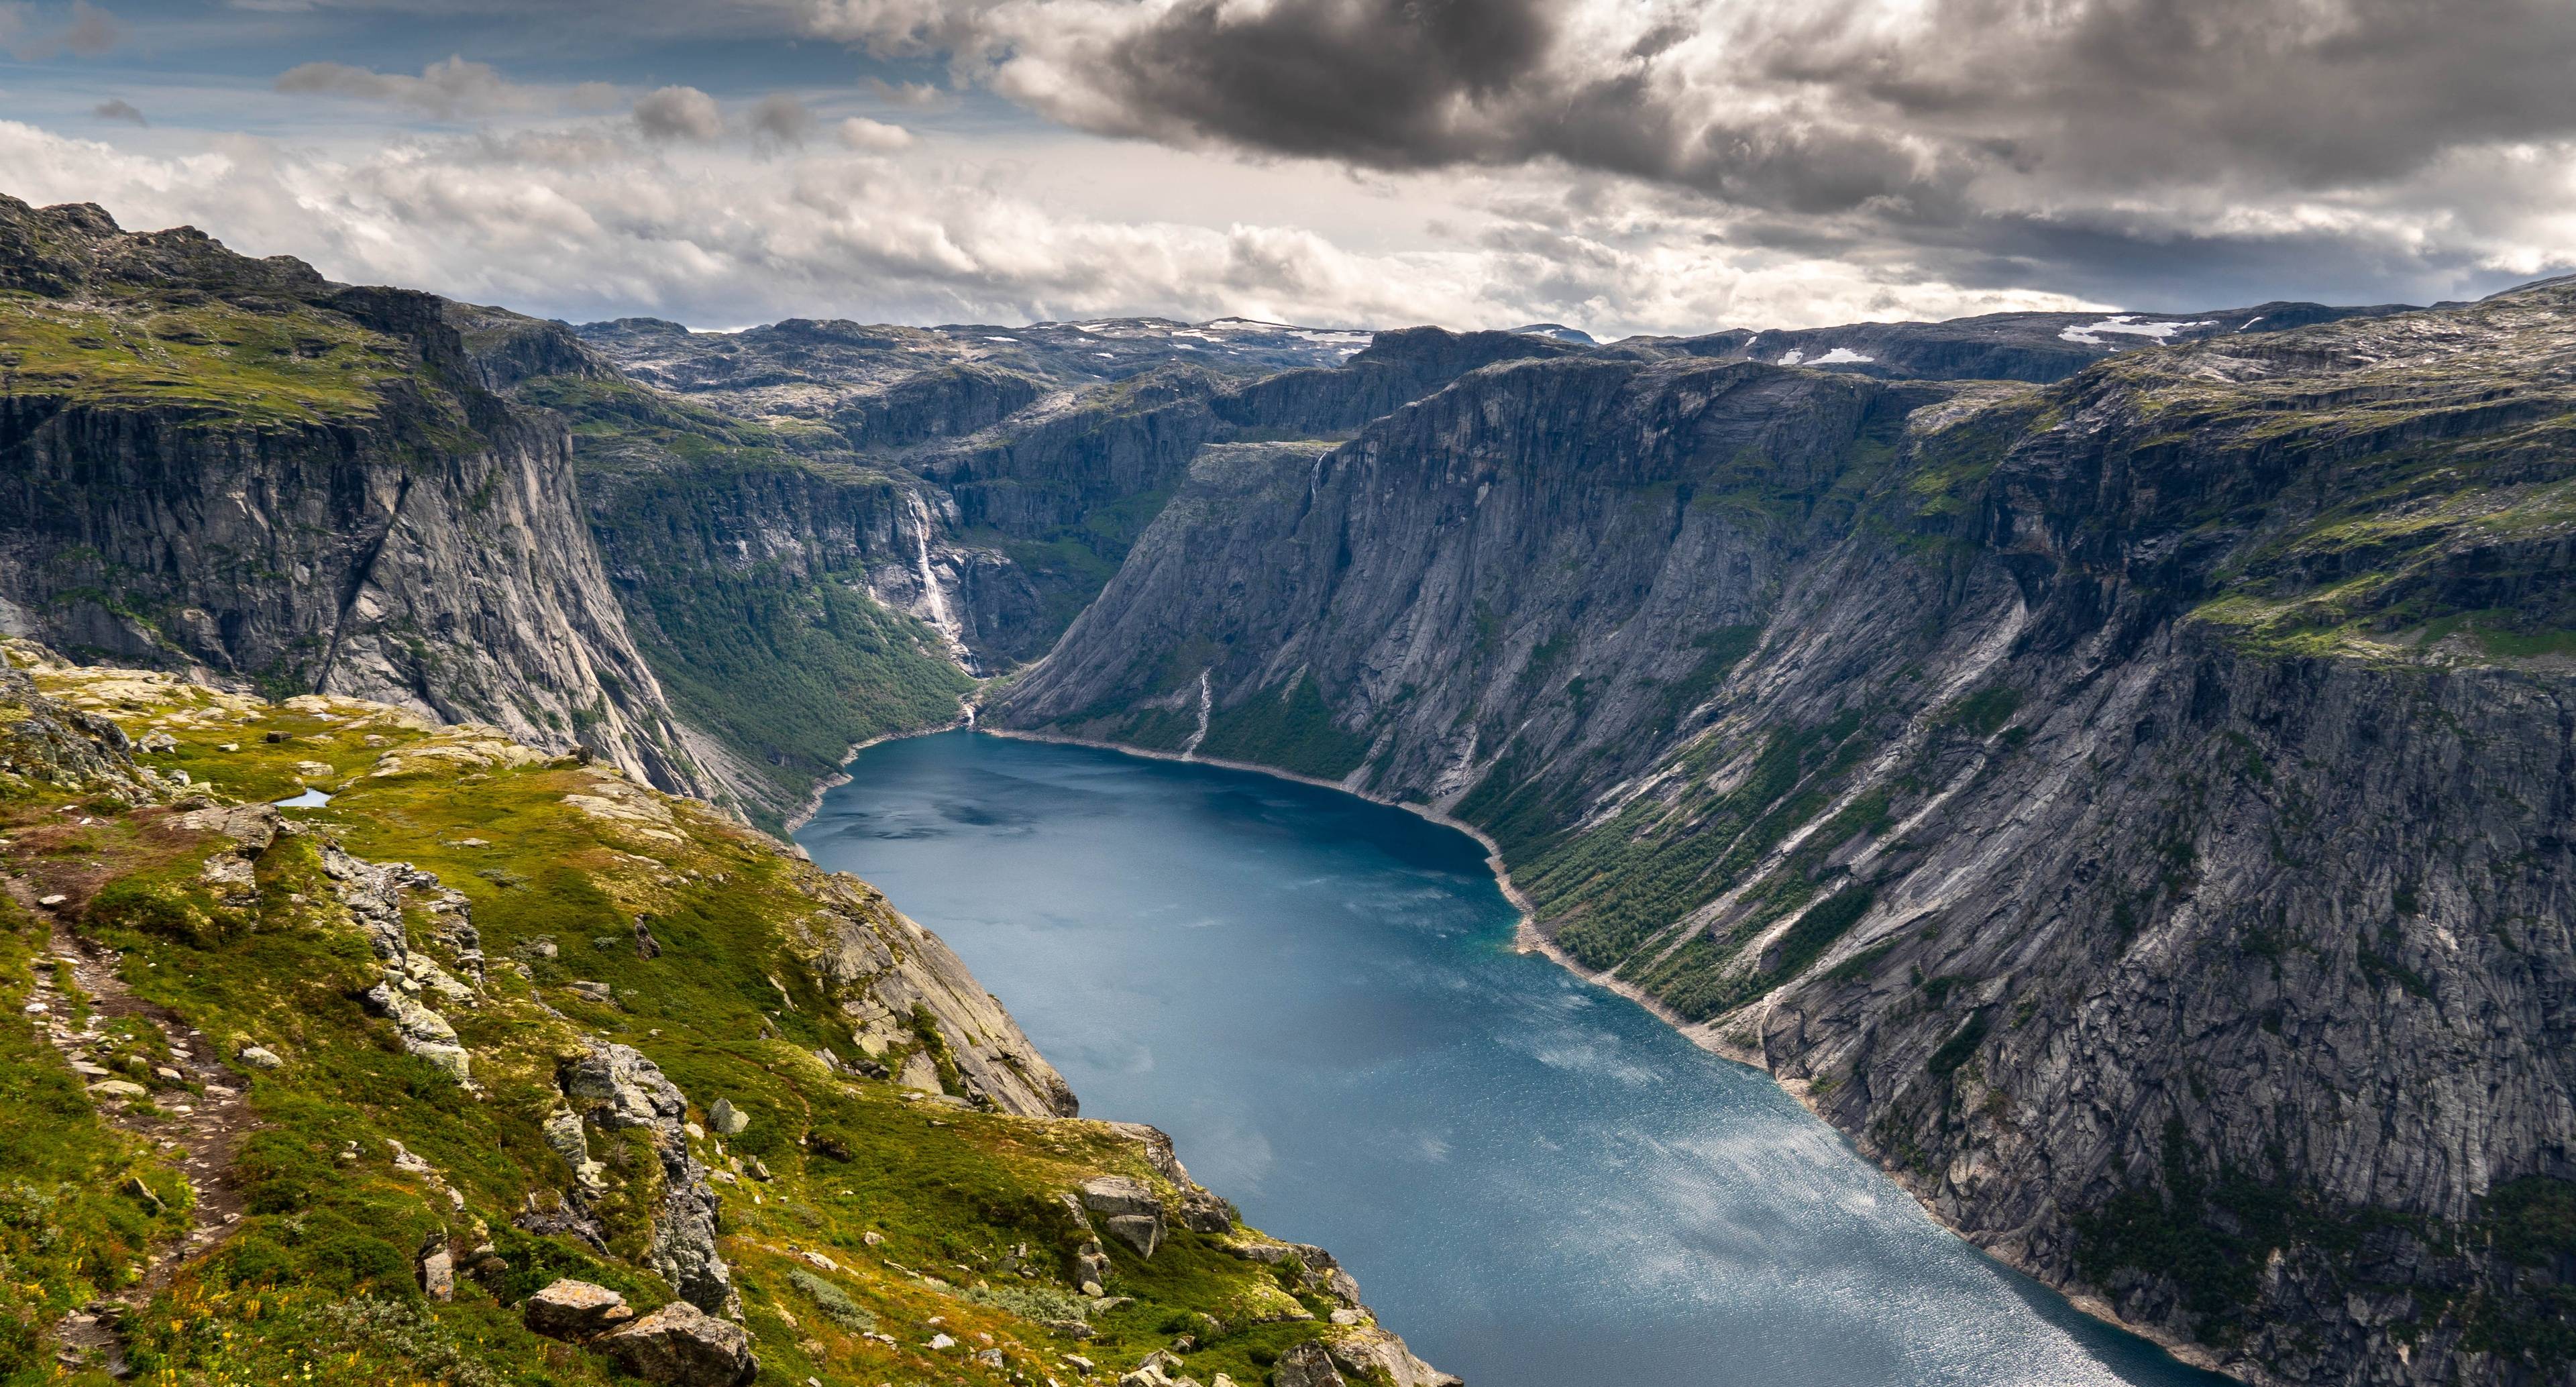 Machen Sie sich auf den Weg zu Norwegens attraktivsten Sehenswürdigkeiten und beginnen Sie Ihre Reise in Richtung Trolltunga